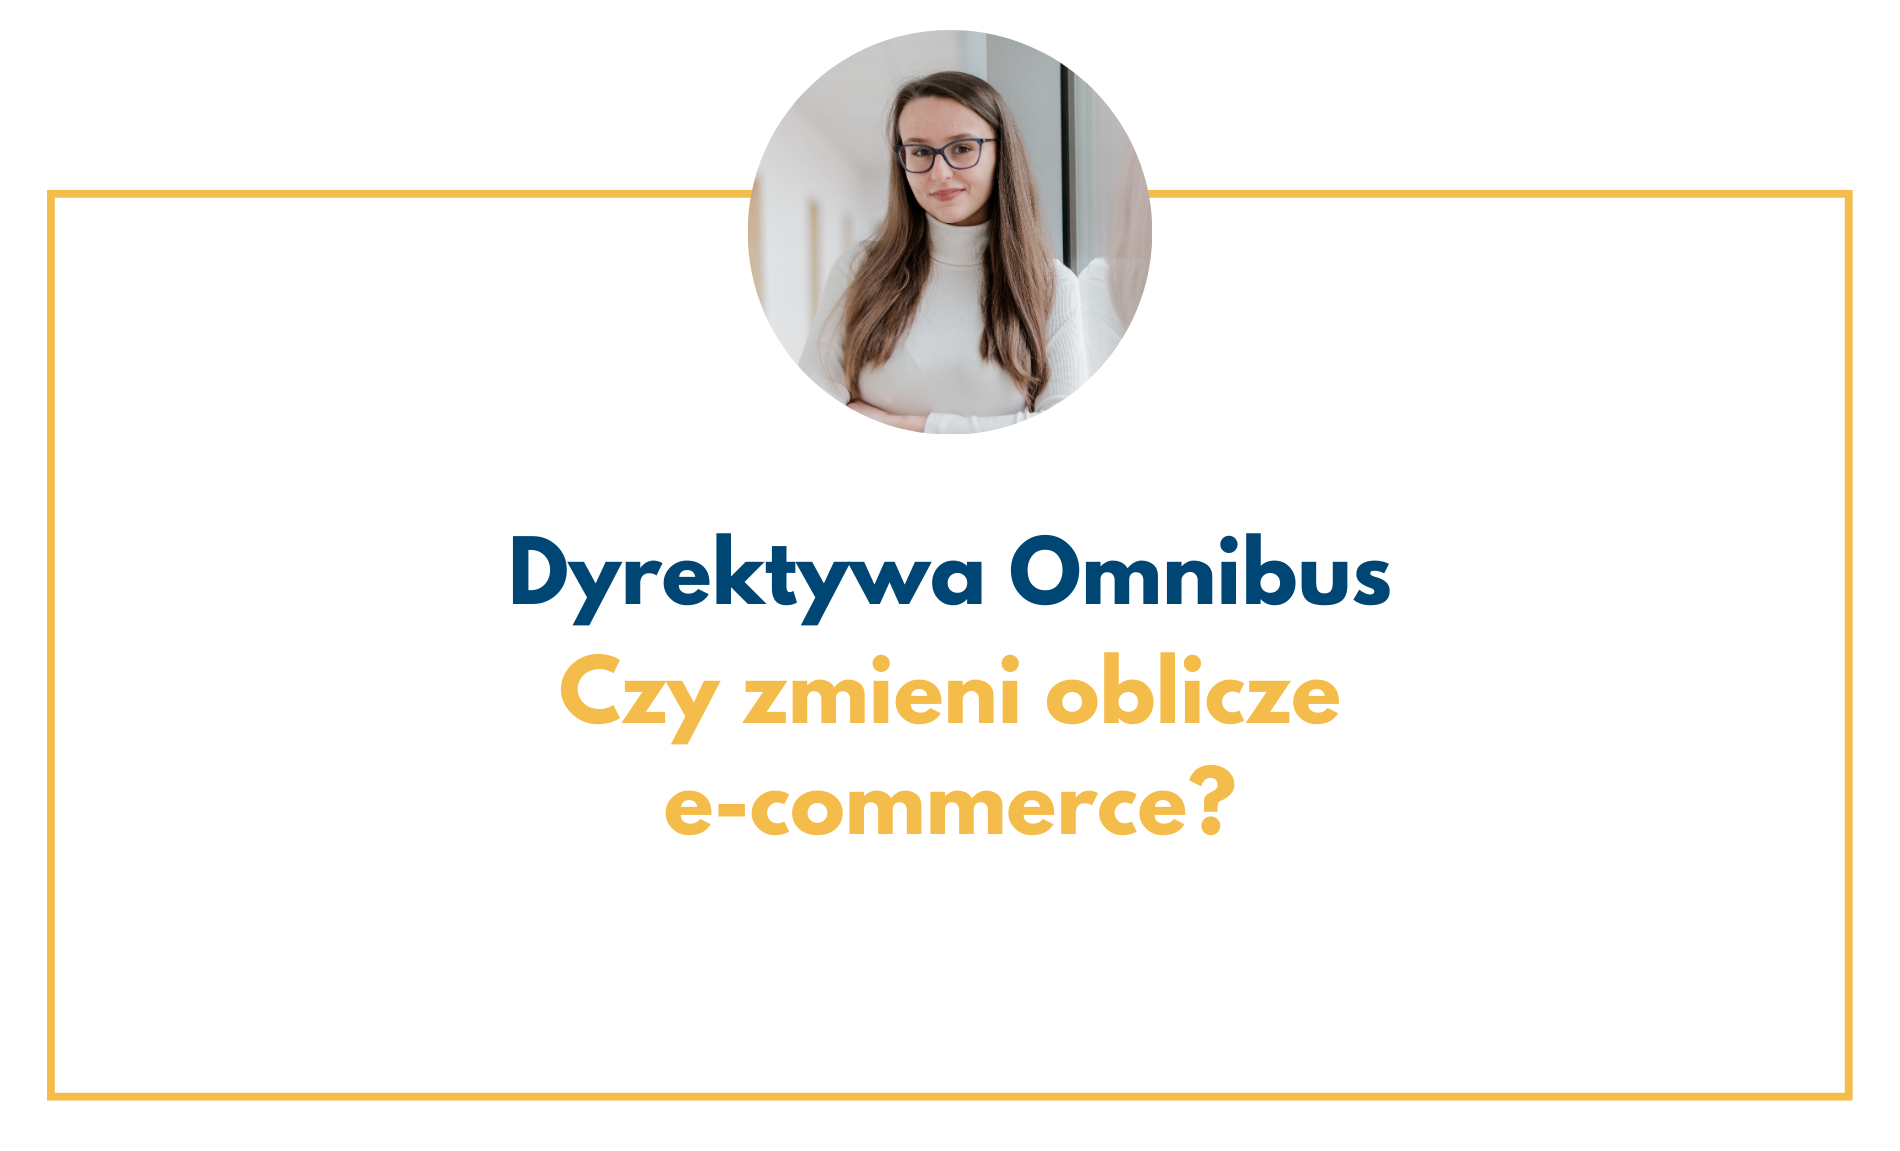 Czy dyrektywa omnibus zmieni e-commerce